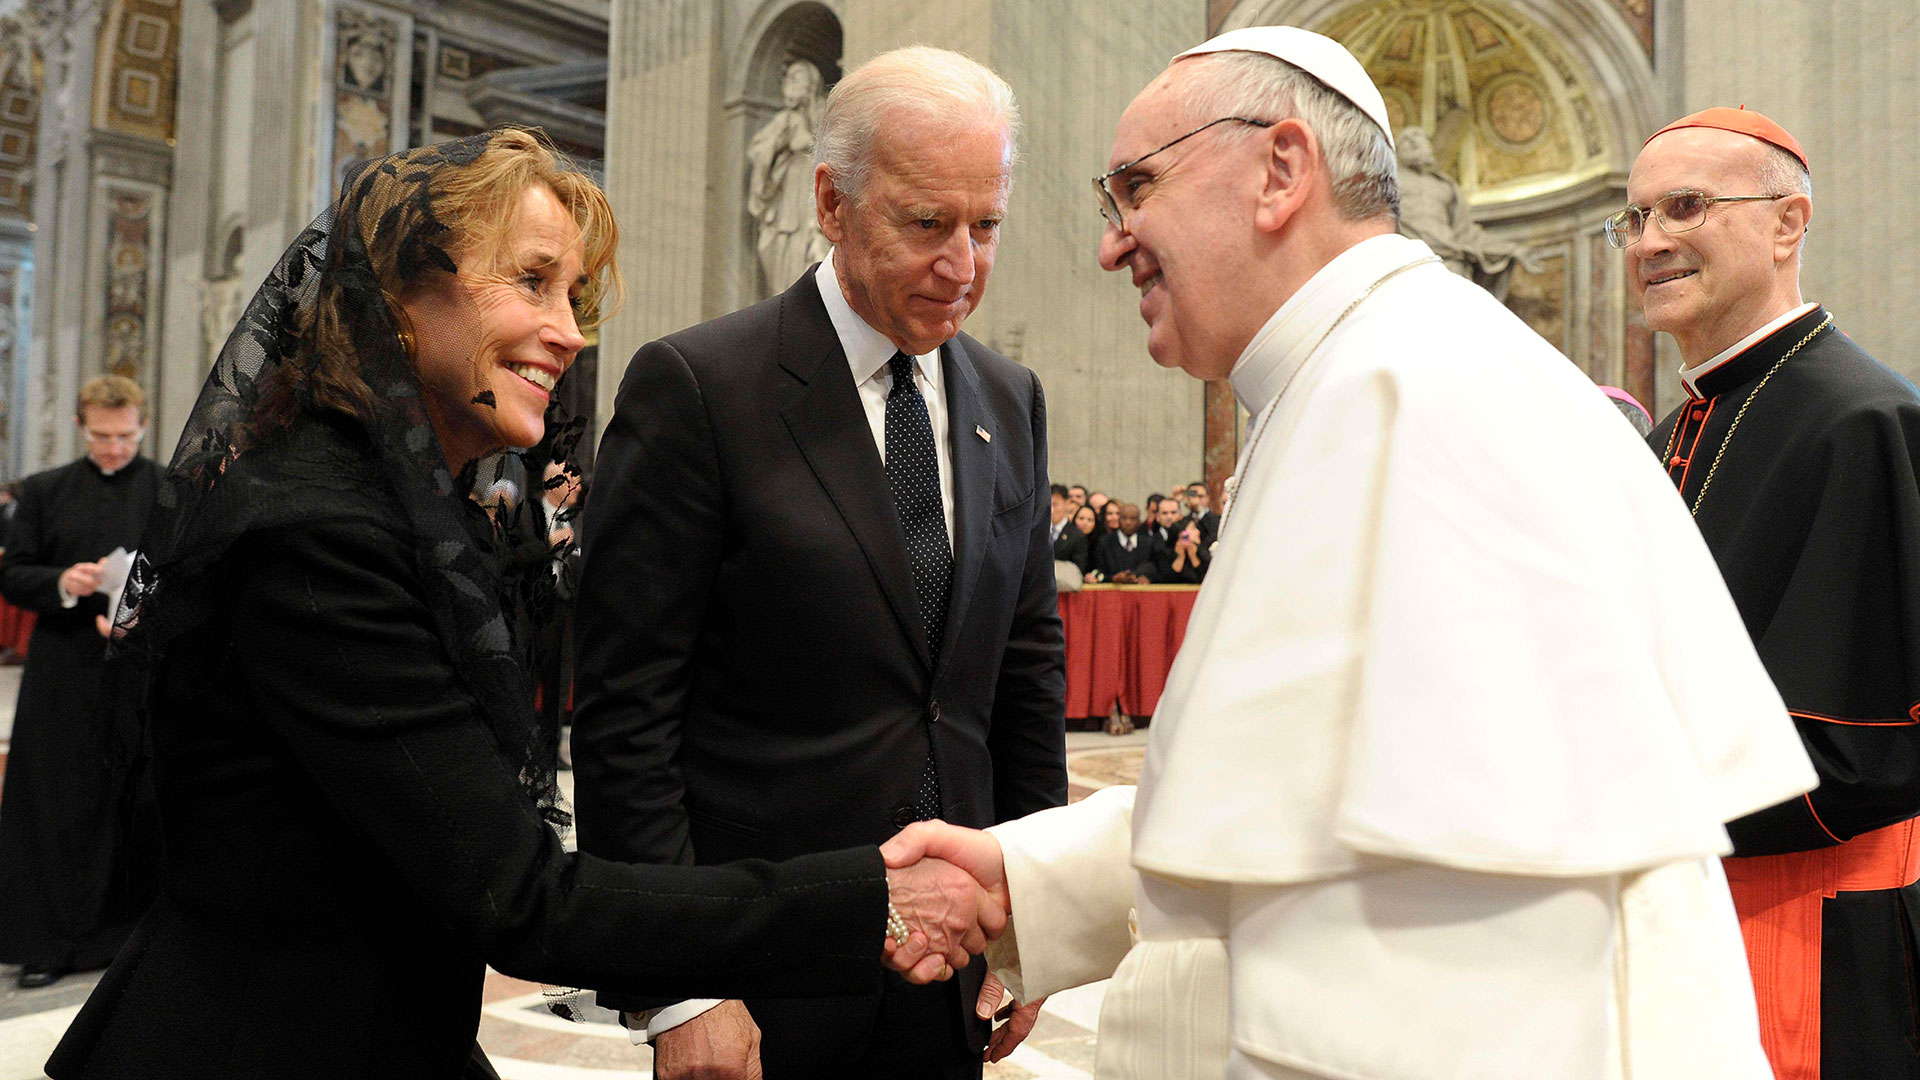 Joe Biden, quien por ese entonces era Vicepresidente de los Estados Unidos de América -y actual Presidente-, junto a su esposa, Jill, también asistieron para felicitar al Papa argentino